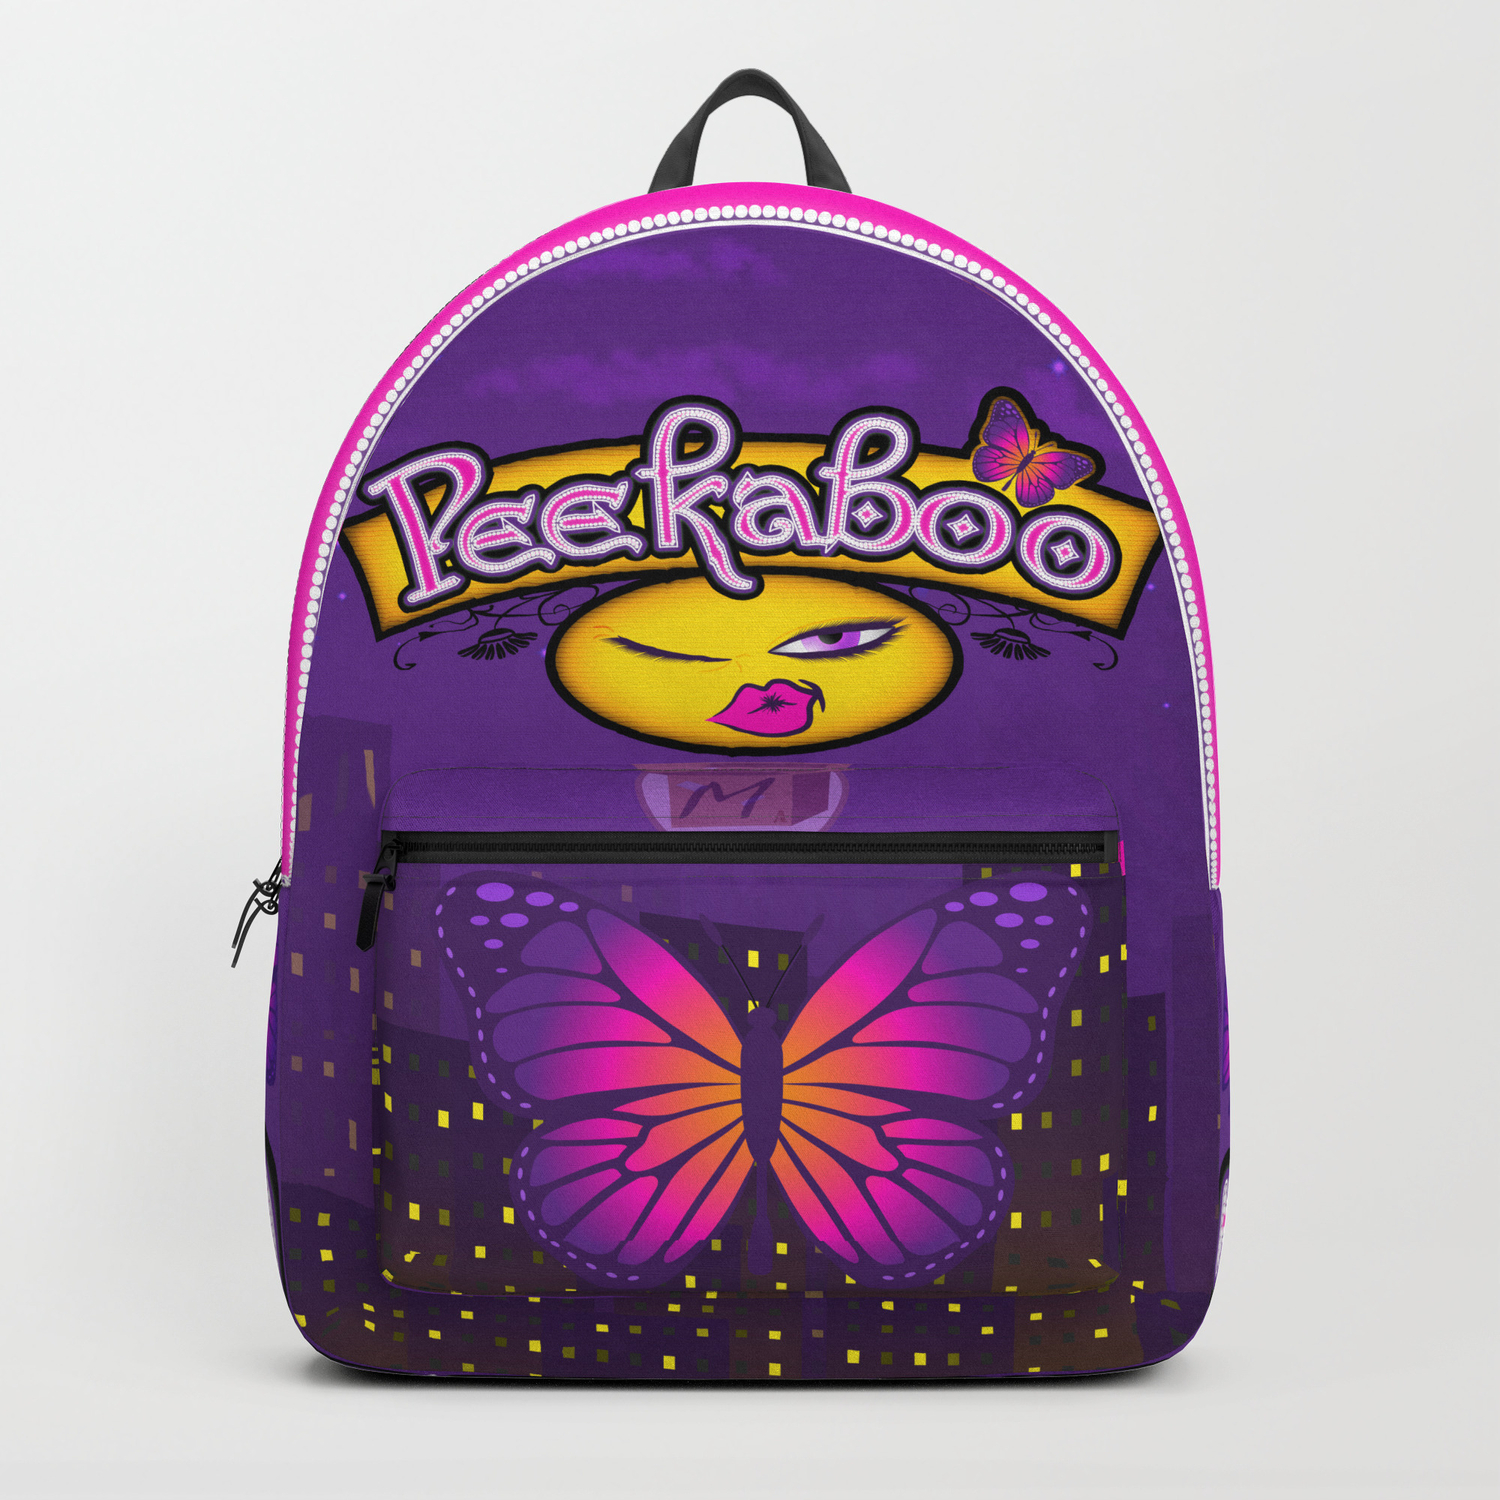 peekaboo backpack